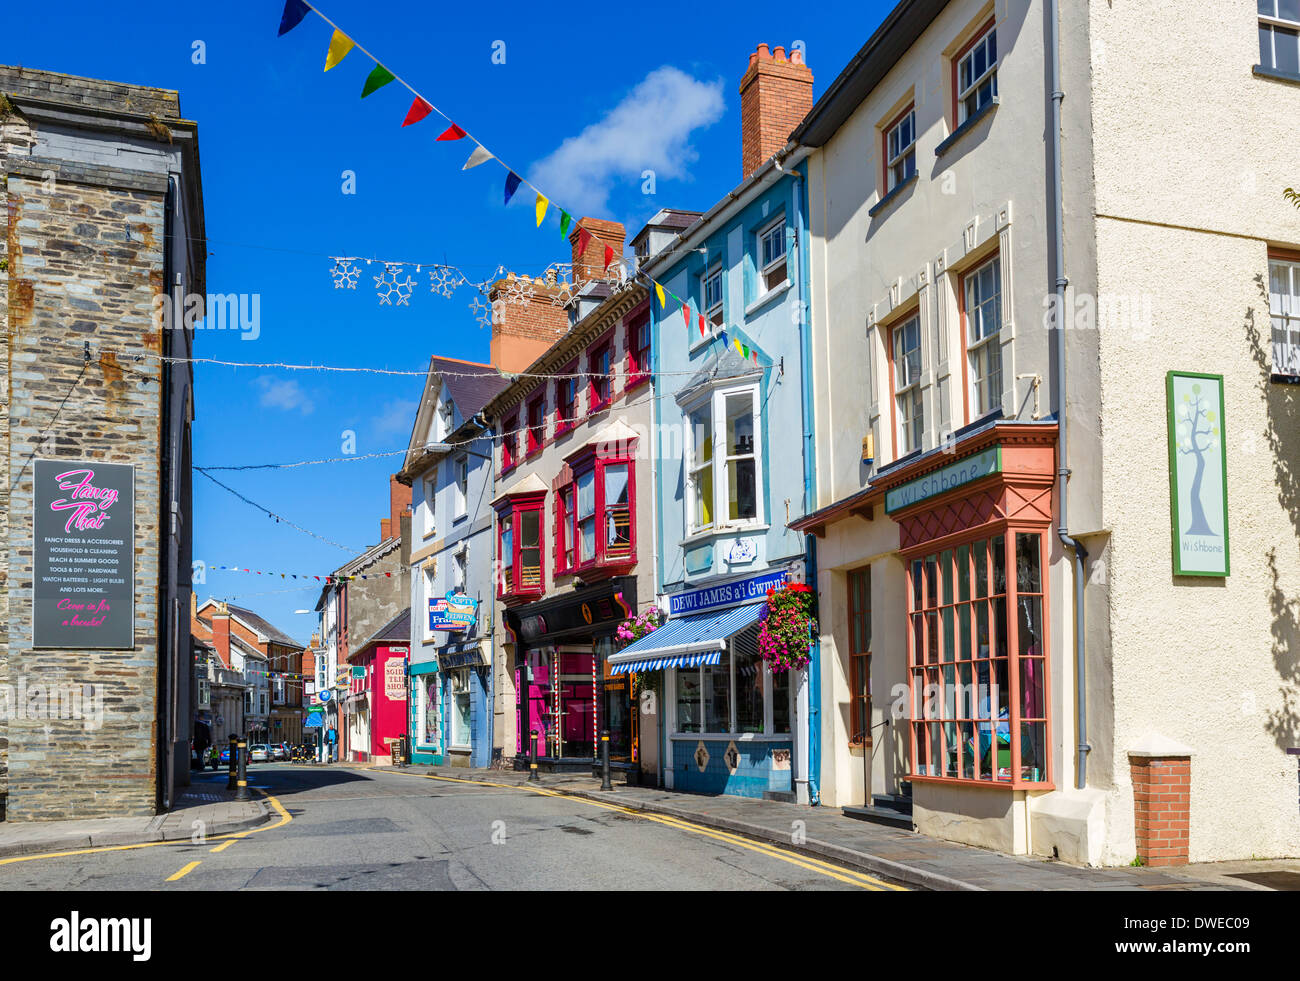 Tiendas en la calle alta, Cardigan, Ceredigion, Gales, Reino Unido Foto de stock